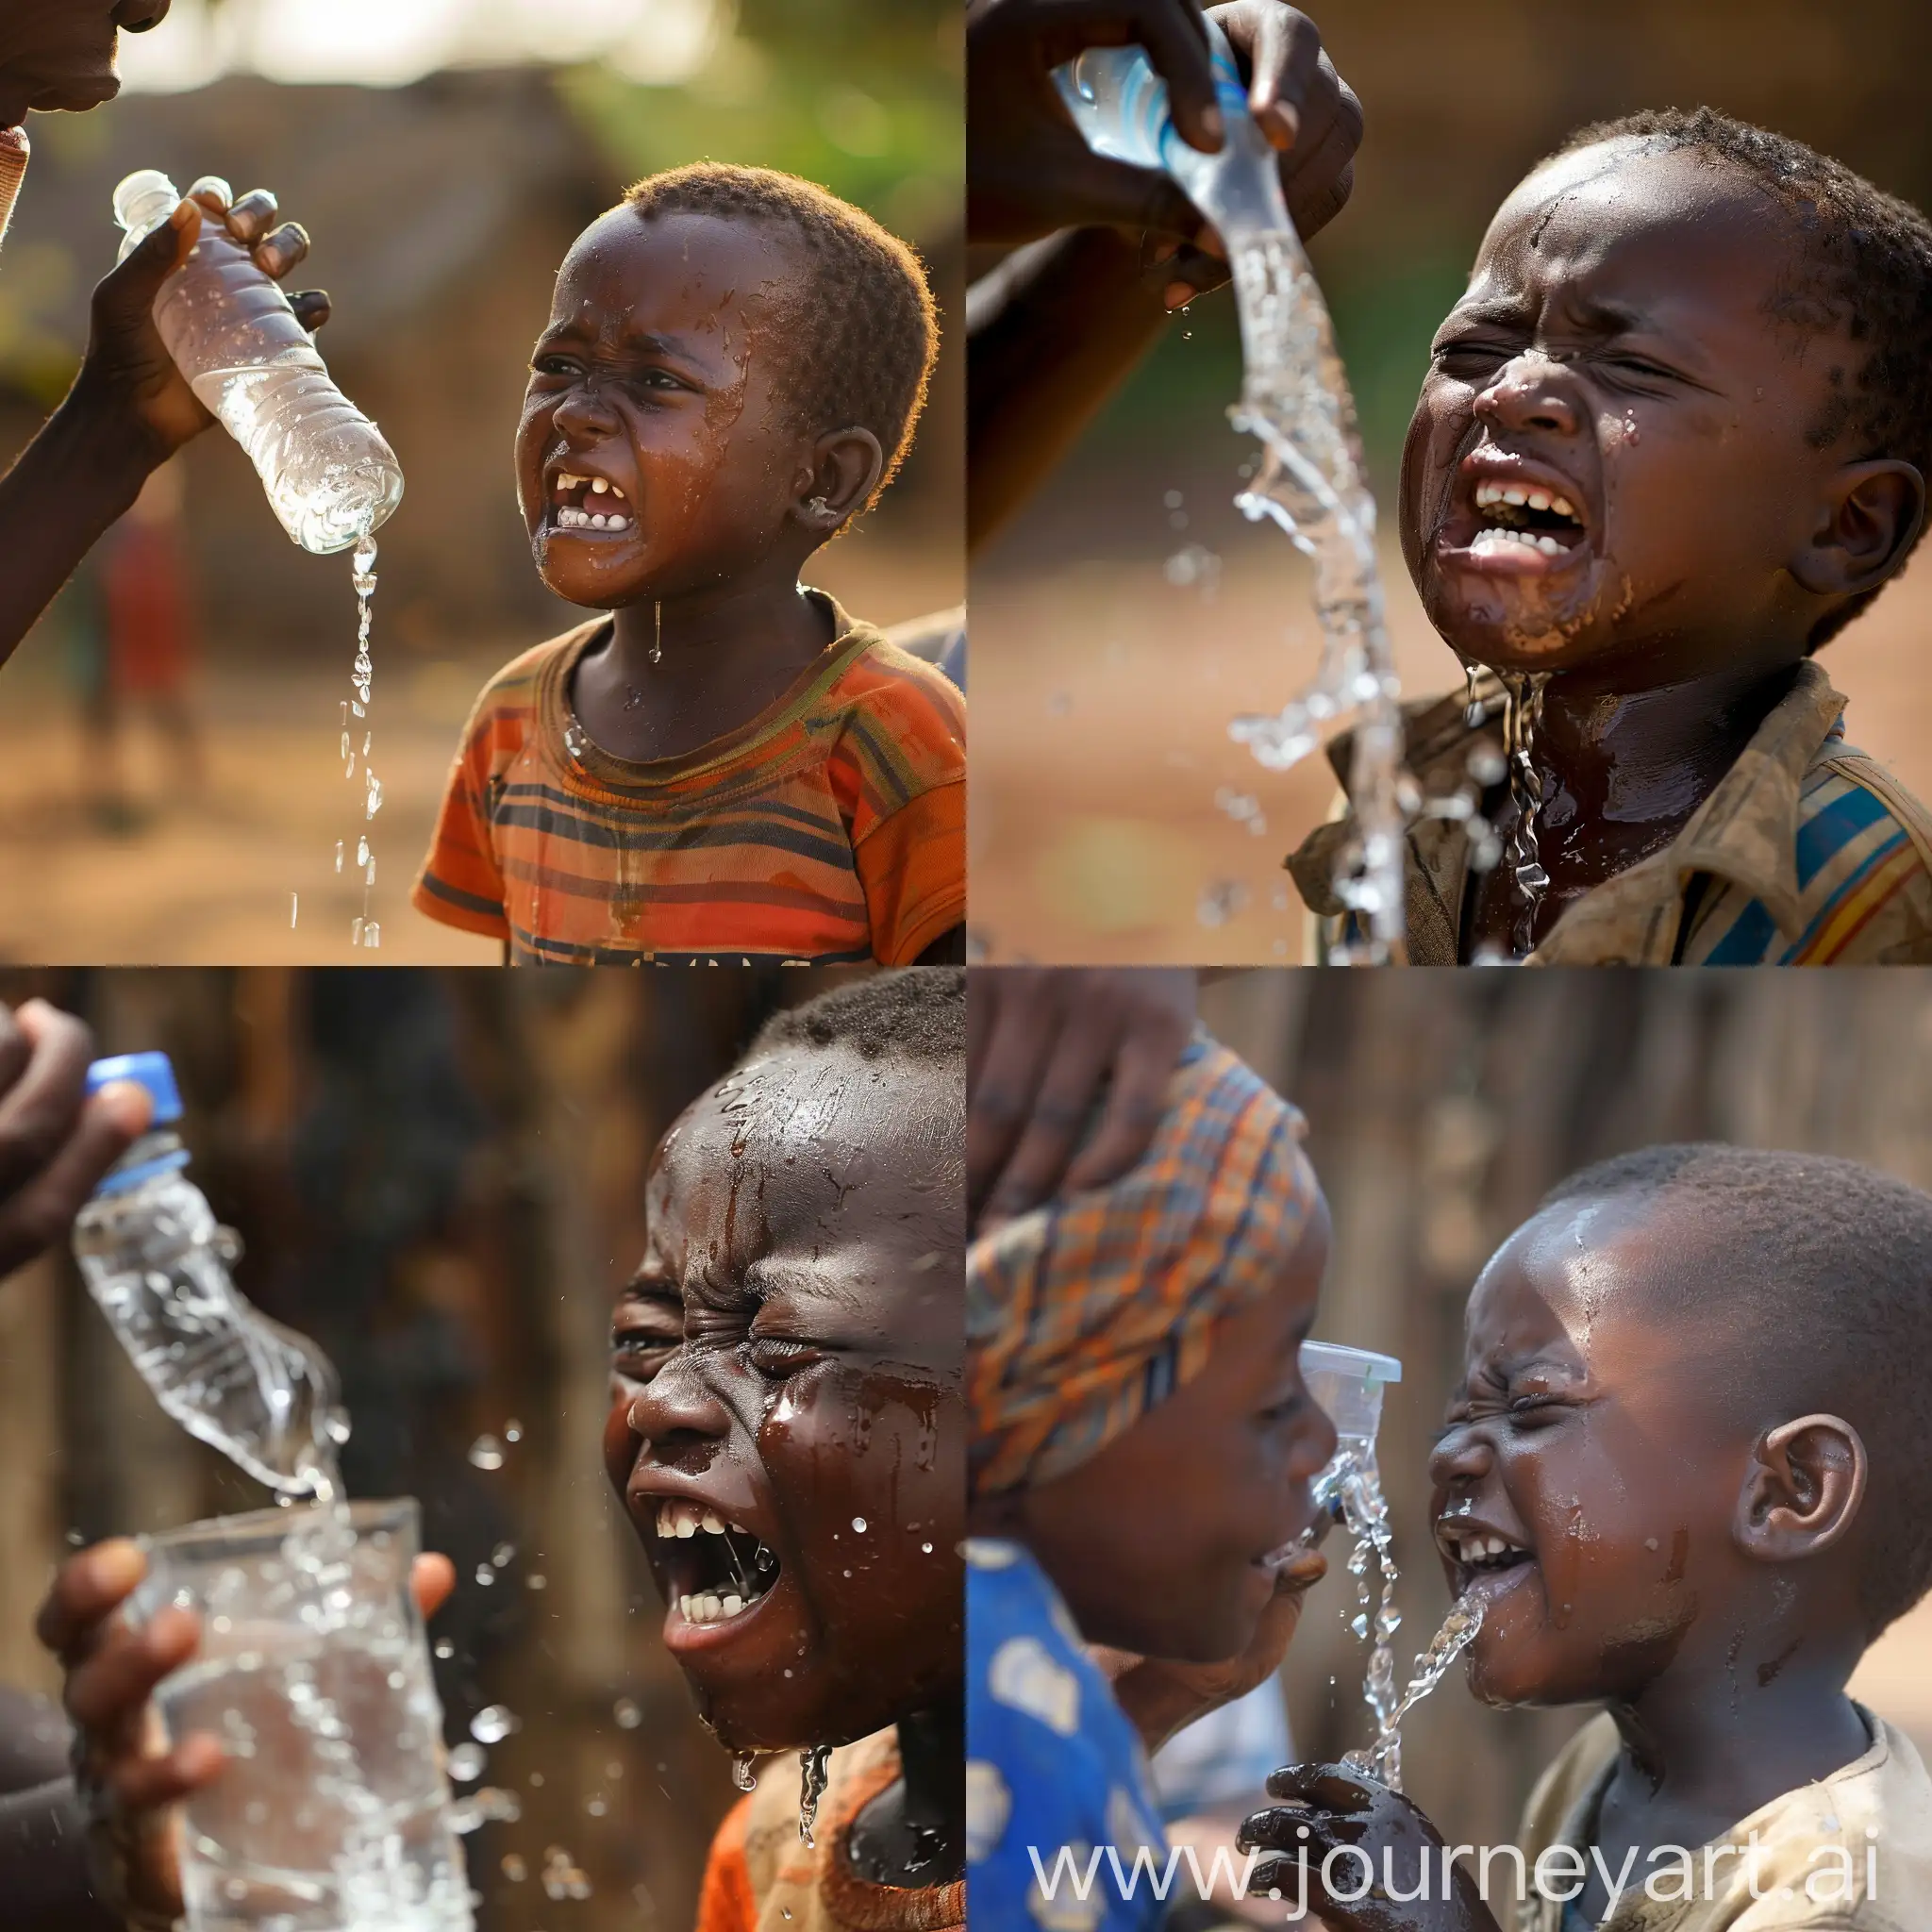 Африканский мальчик плачет и смотрит на то, как человек пьет воду и смеется с него